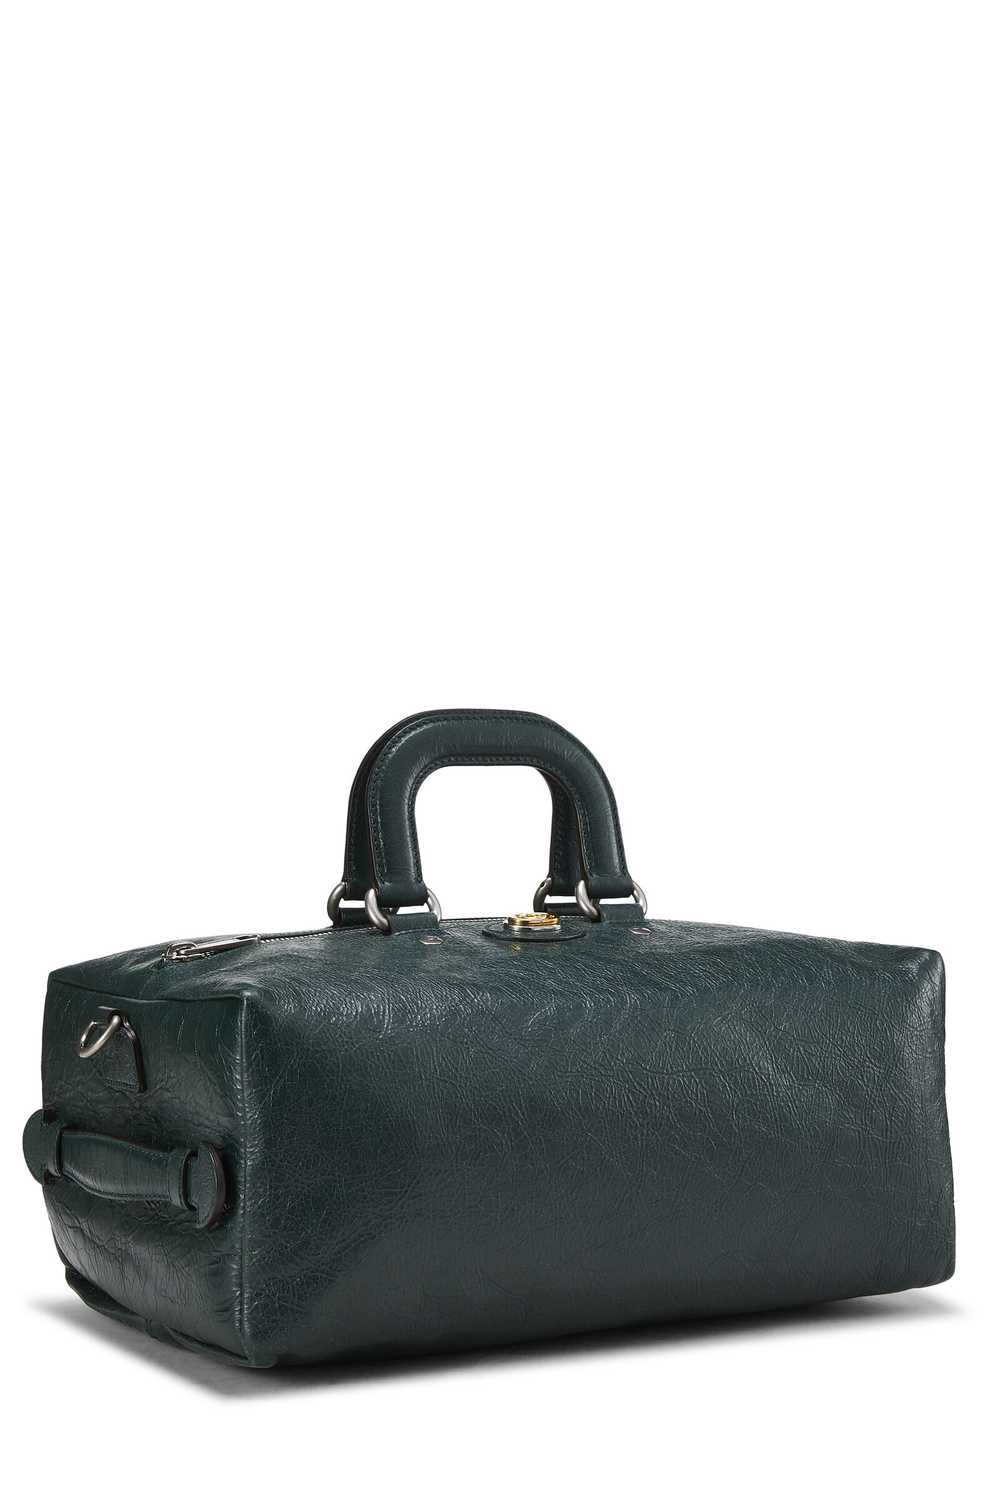 Black Leather Soft Backpack - image 6